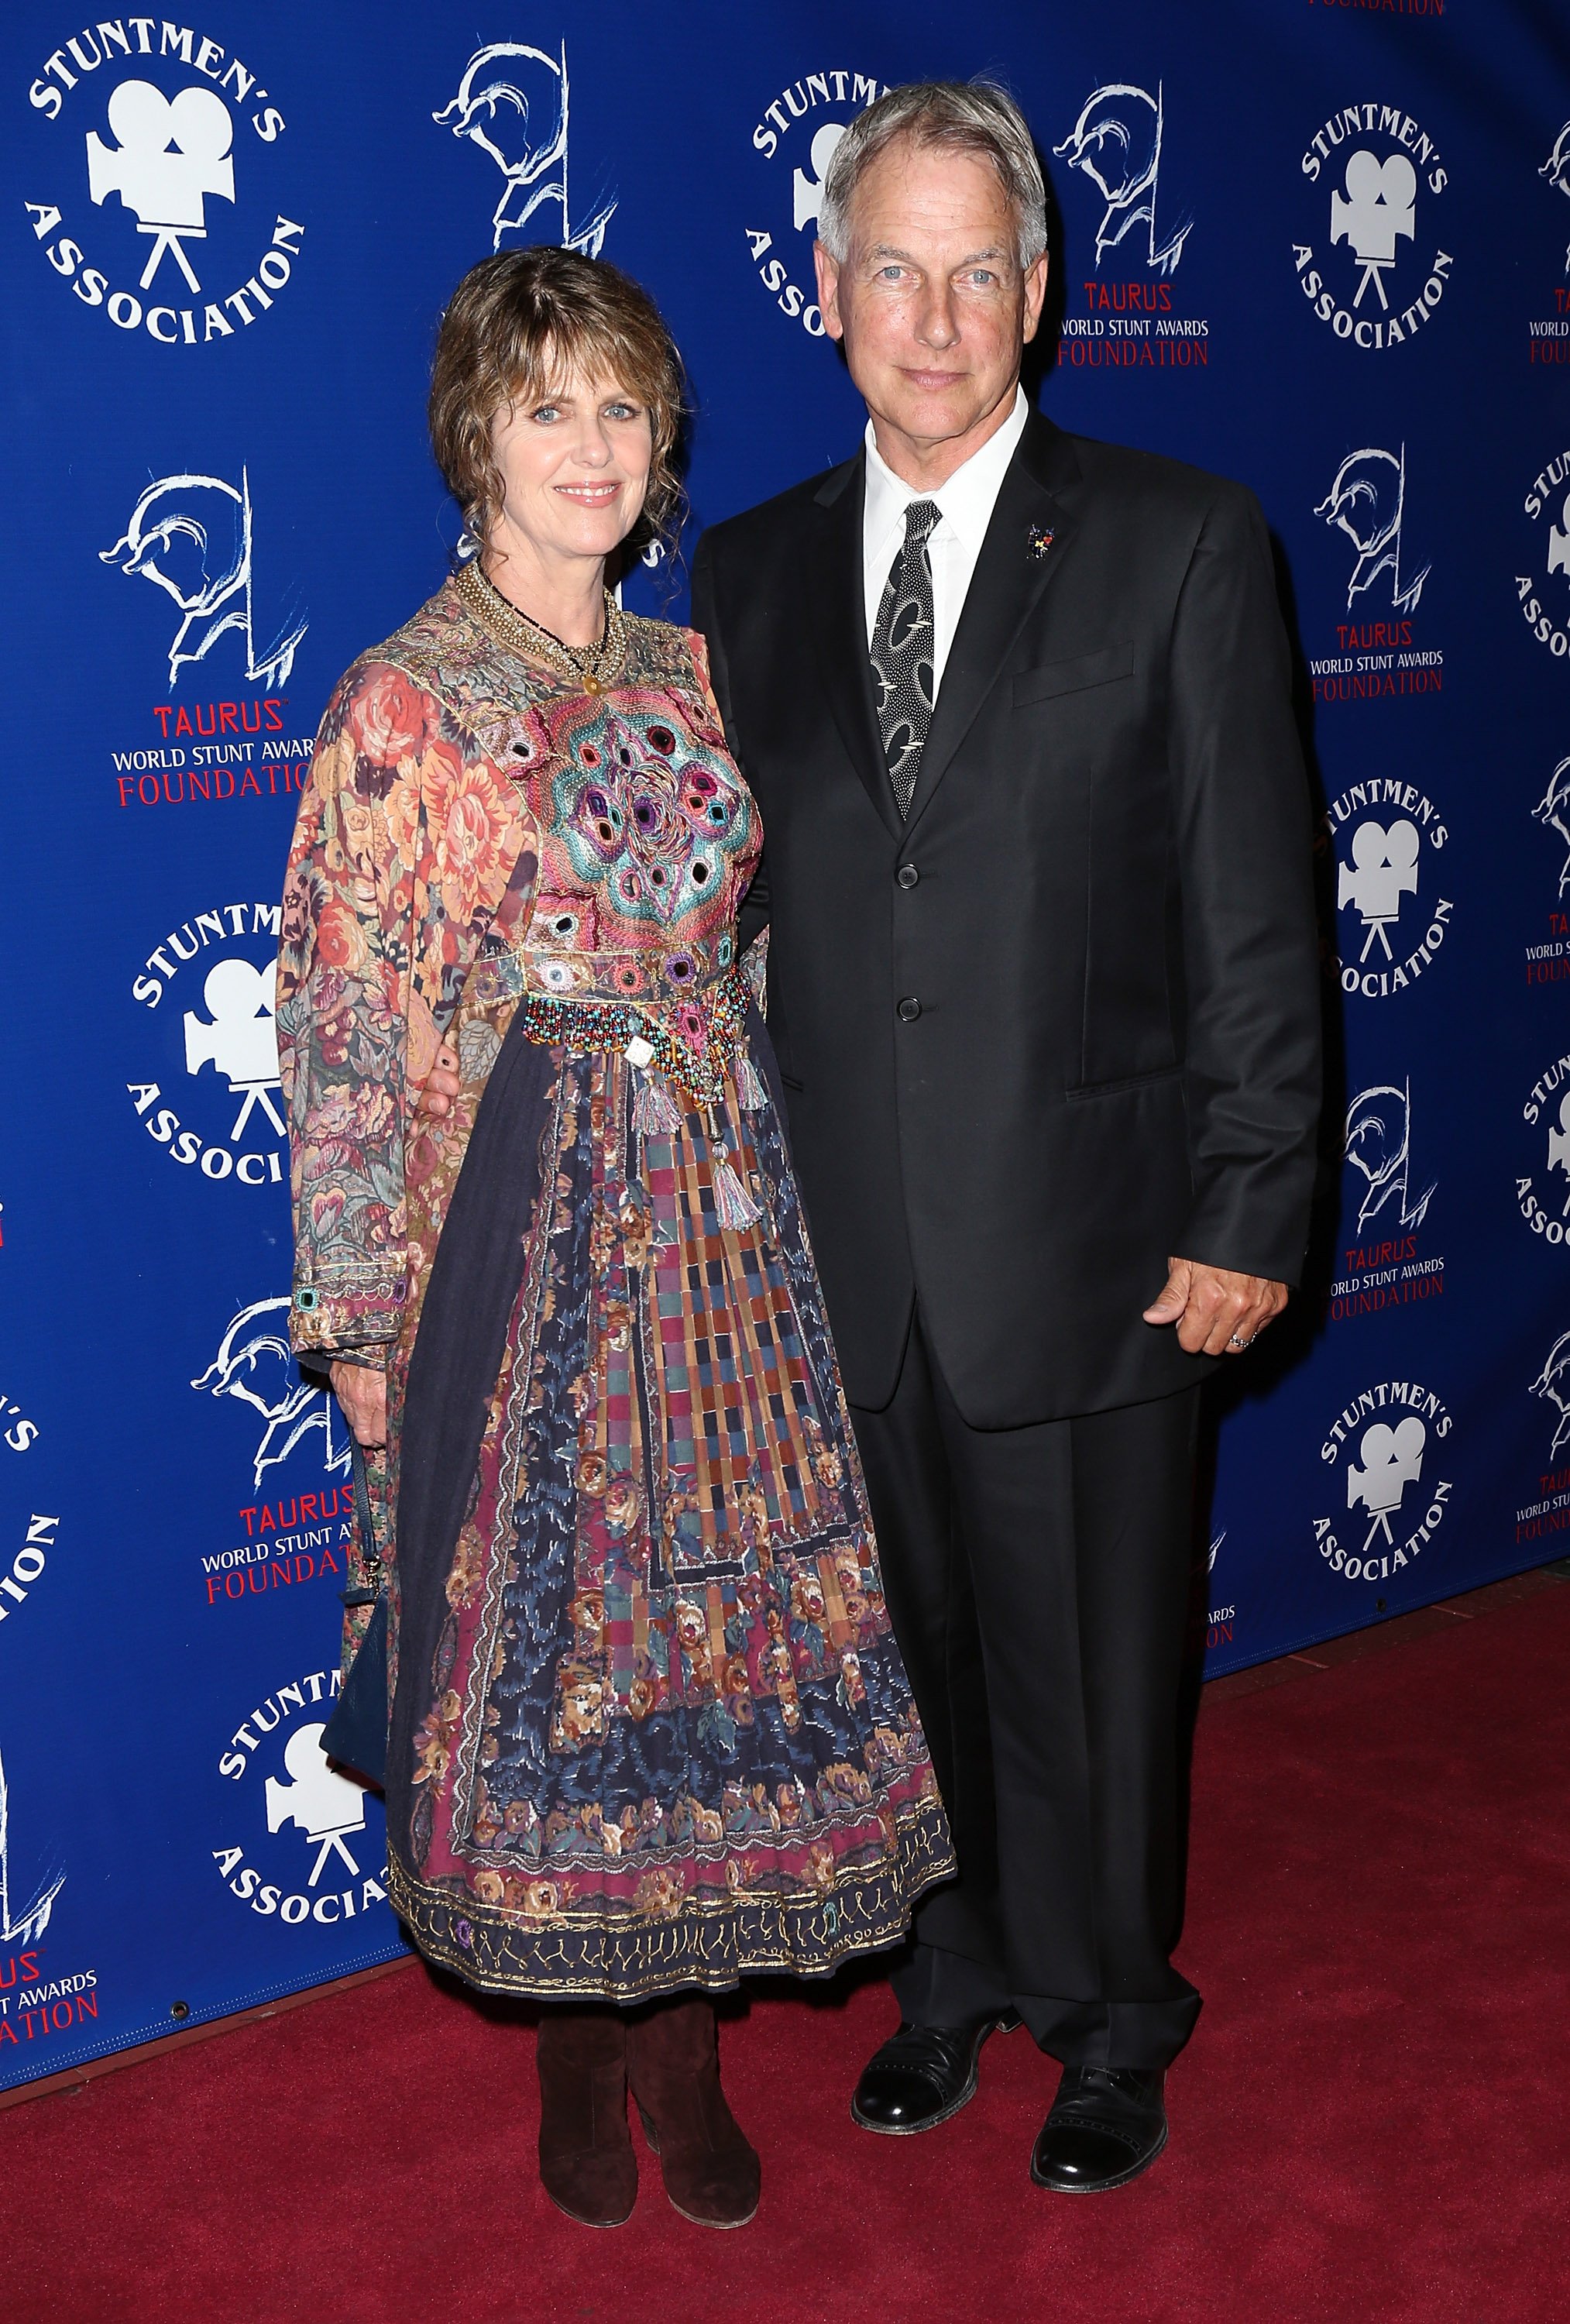 Pam Dawber y su esposo Mark Harmon en la 52ª Cena Anual de Premios de la Asociación de Cineastas de Cine celebrada en el Hilton Universal City, el 14 de septiembre de 2013 en Universal City, California. | Foto: Getty Images